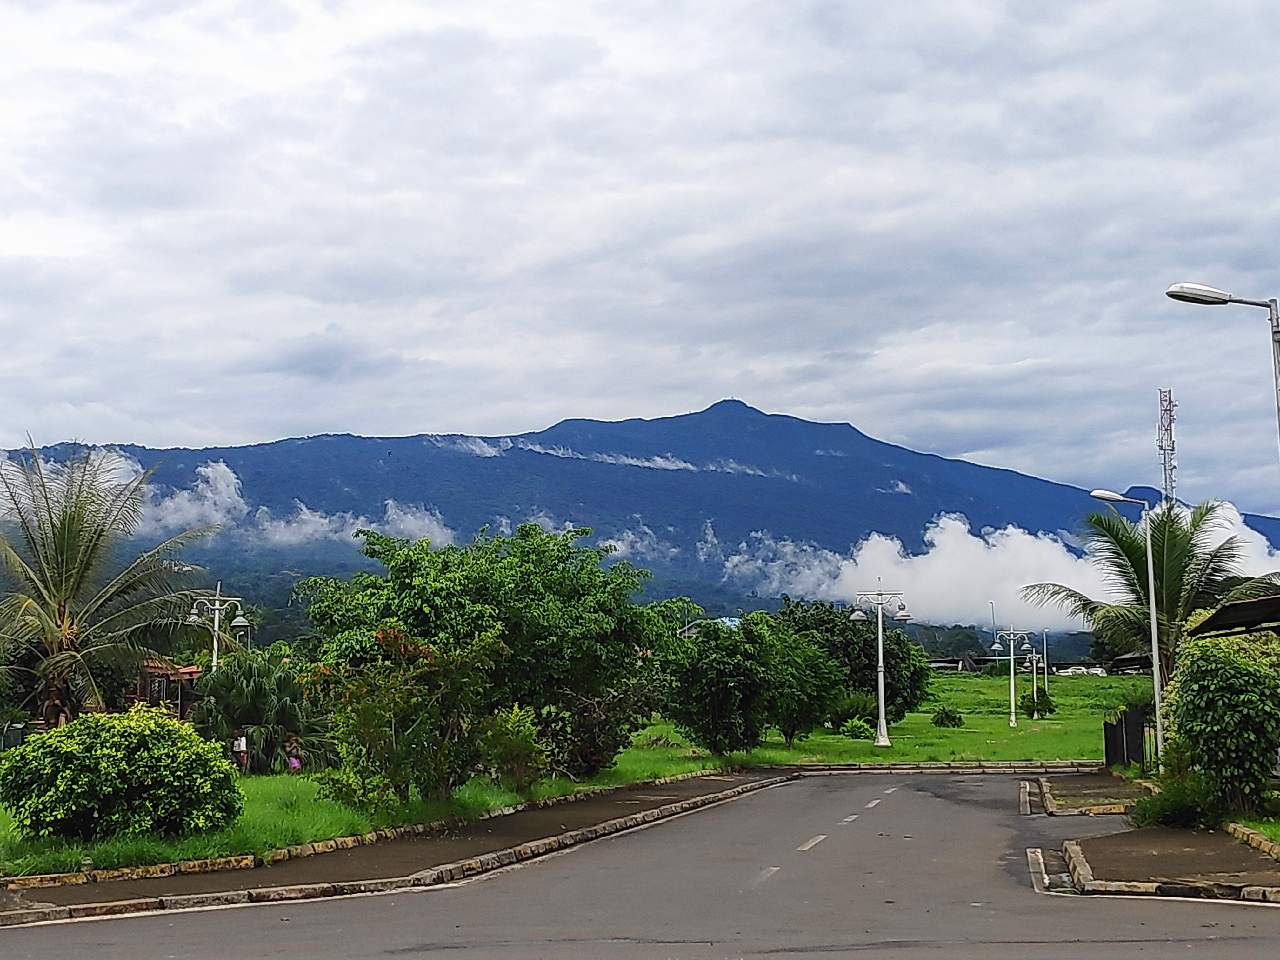 Highest peak of Equatorial Guinea